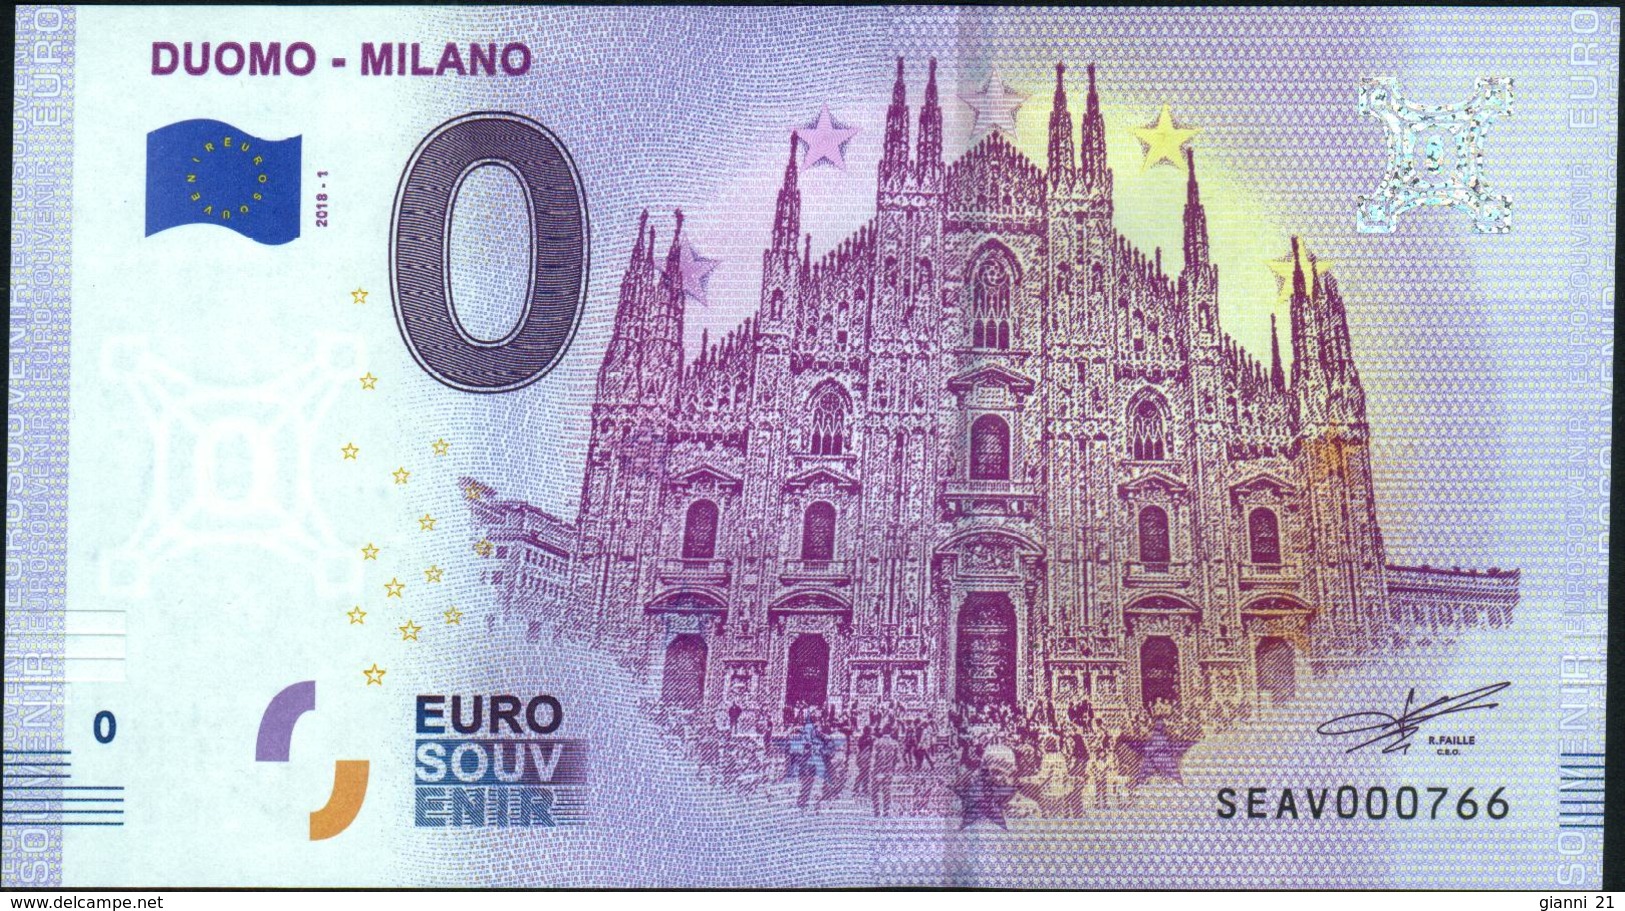 Zero - BILLET EURO O Souvenir - DUOMO - MILANO 2018-1set UNC {Italy} - Private Proofs / Unofficial